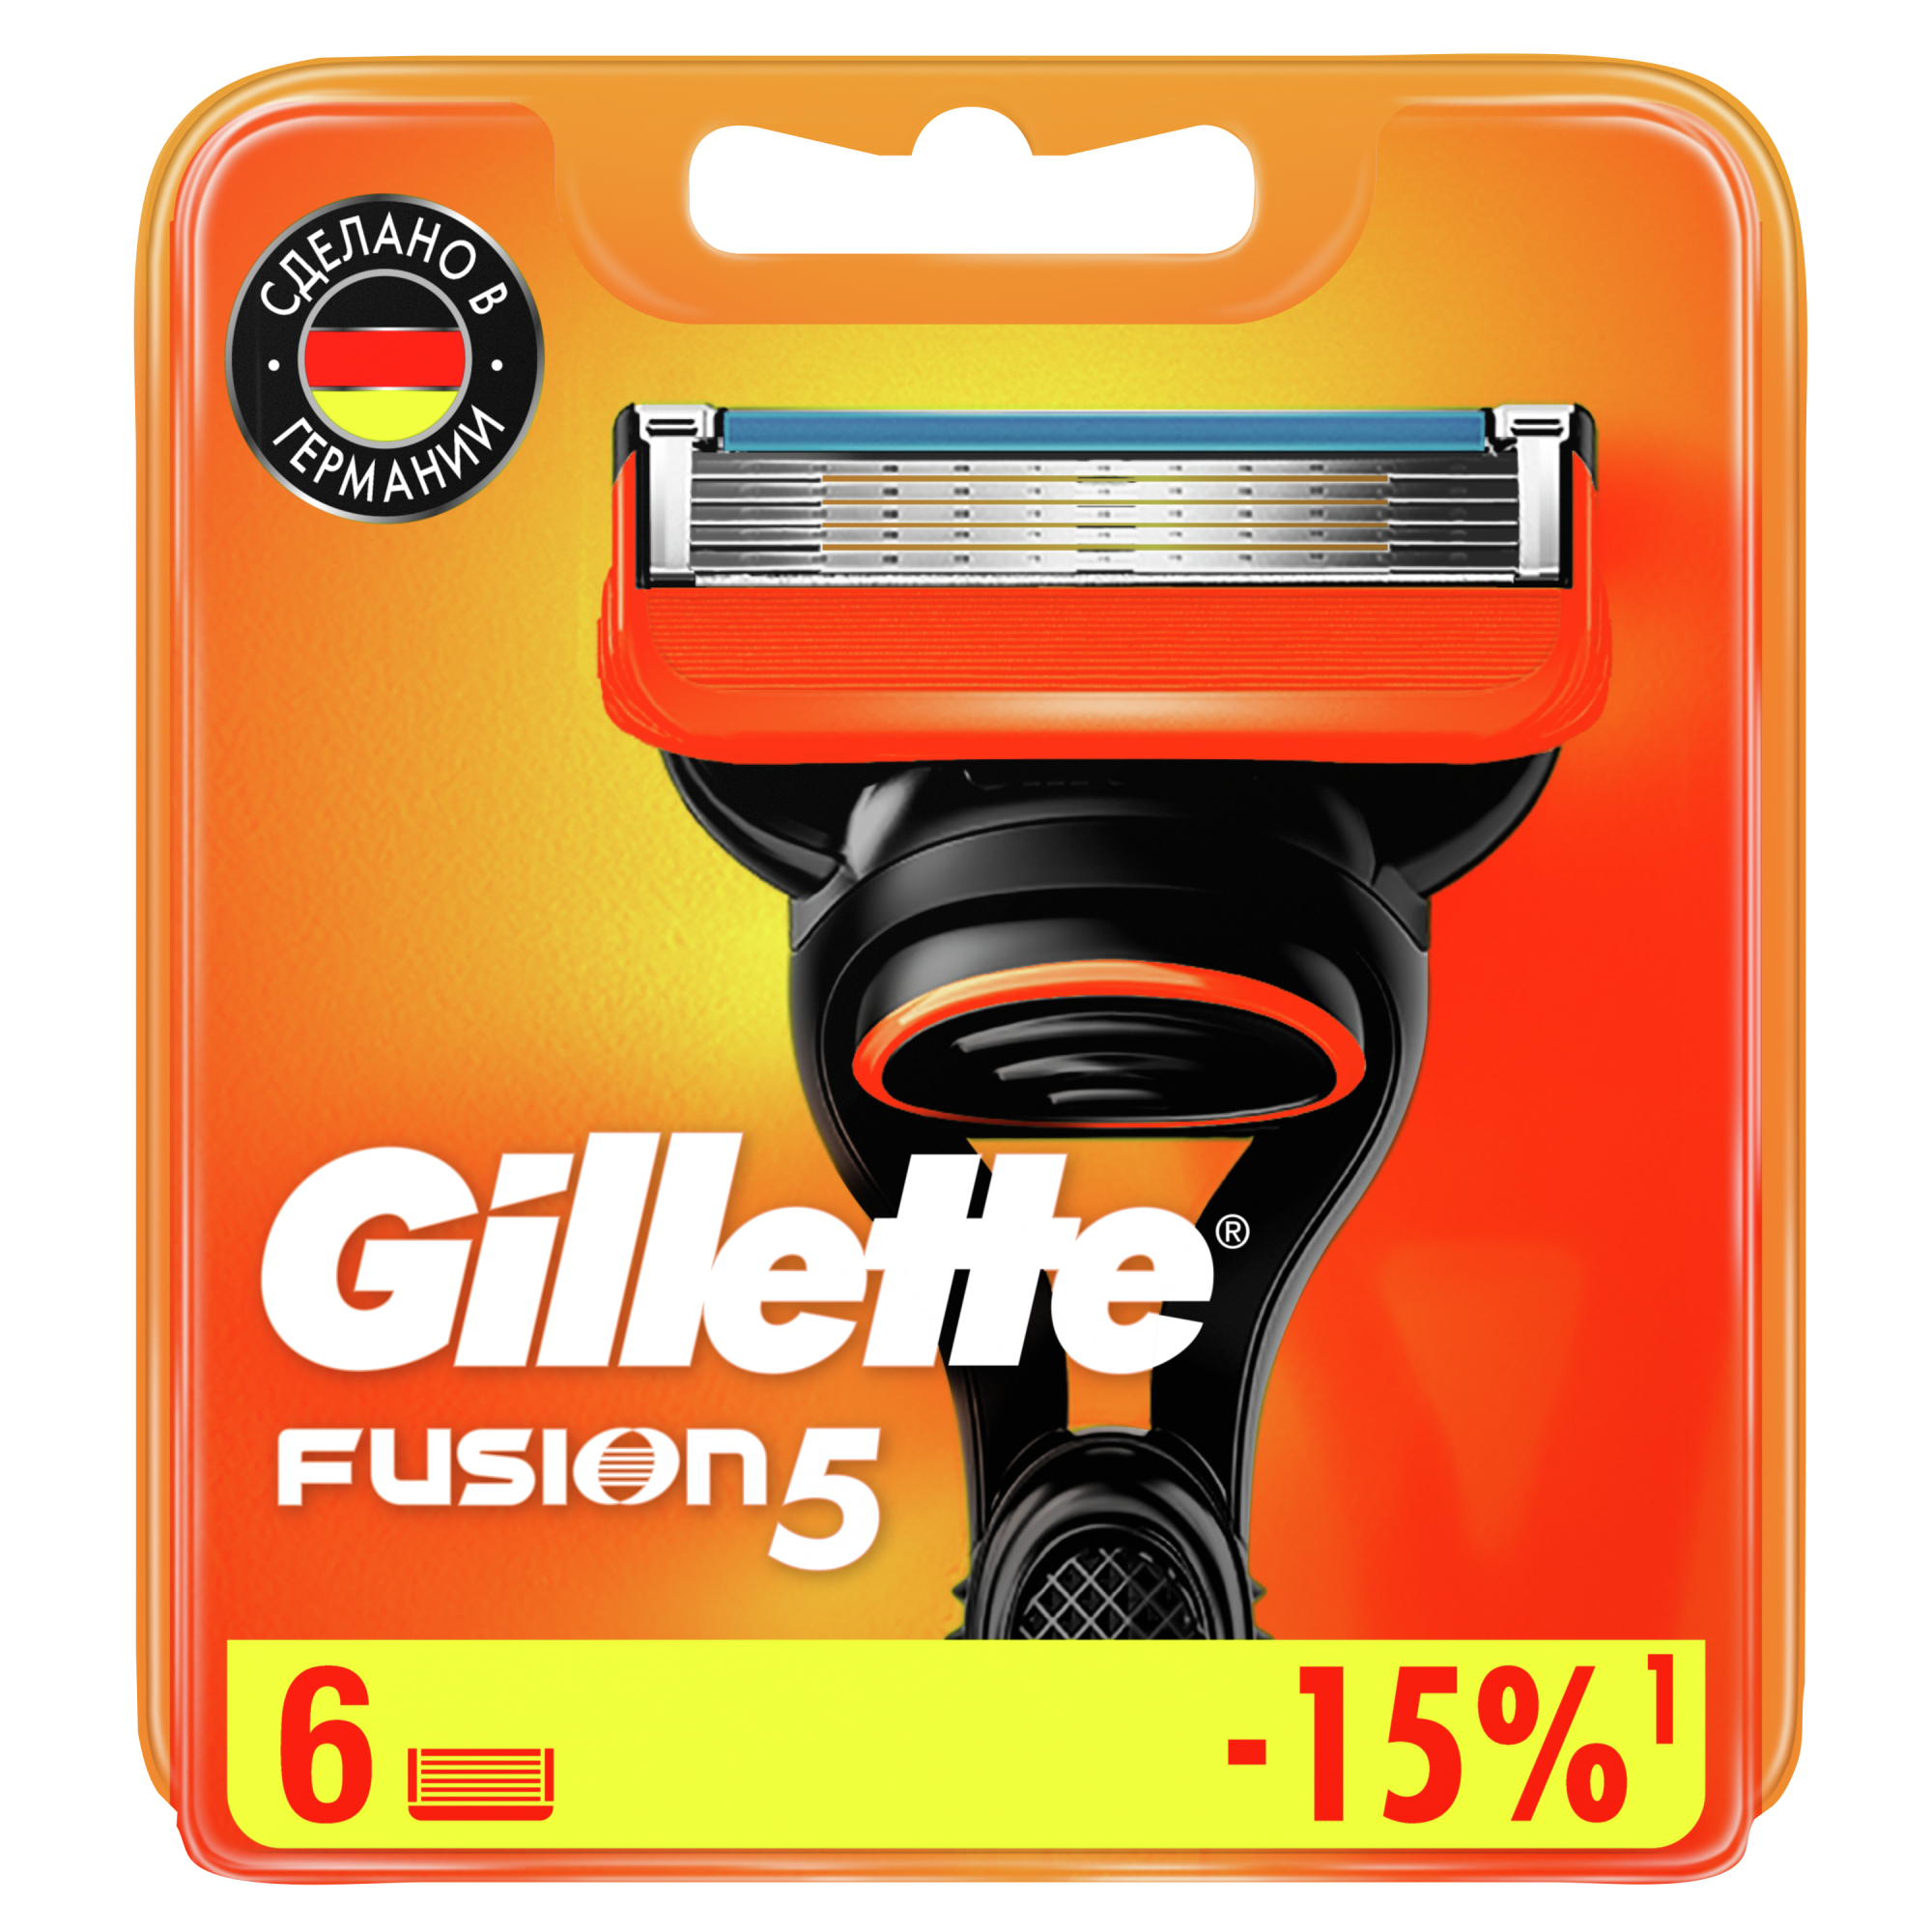 Сменные кассеты для мужской бритвы Gillette Fusion5 Power, с 5 лезвиями, c точным триммером для труднодоступных мест, для гладкого бритья надолго, 6 шт мужская бритва gillette fusion5 2 кассеты с 5 лезвиями с уменьшающими трение лезвиями с точным триммером